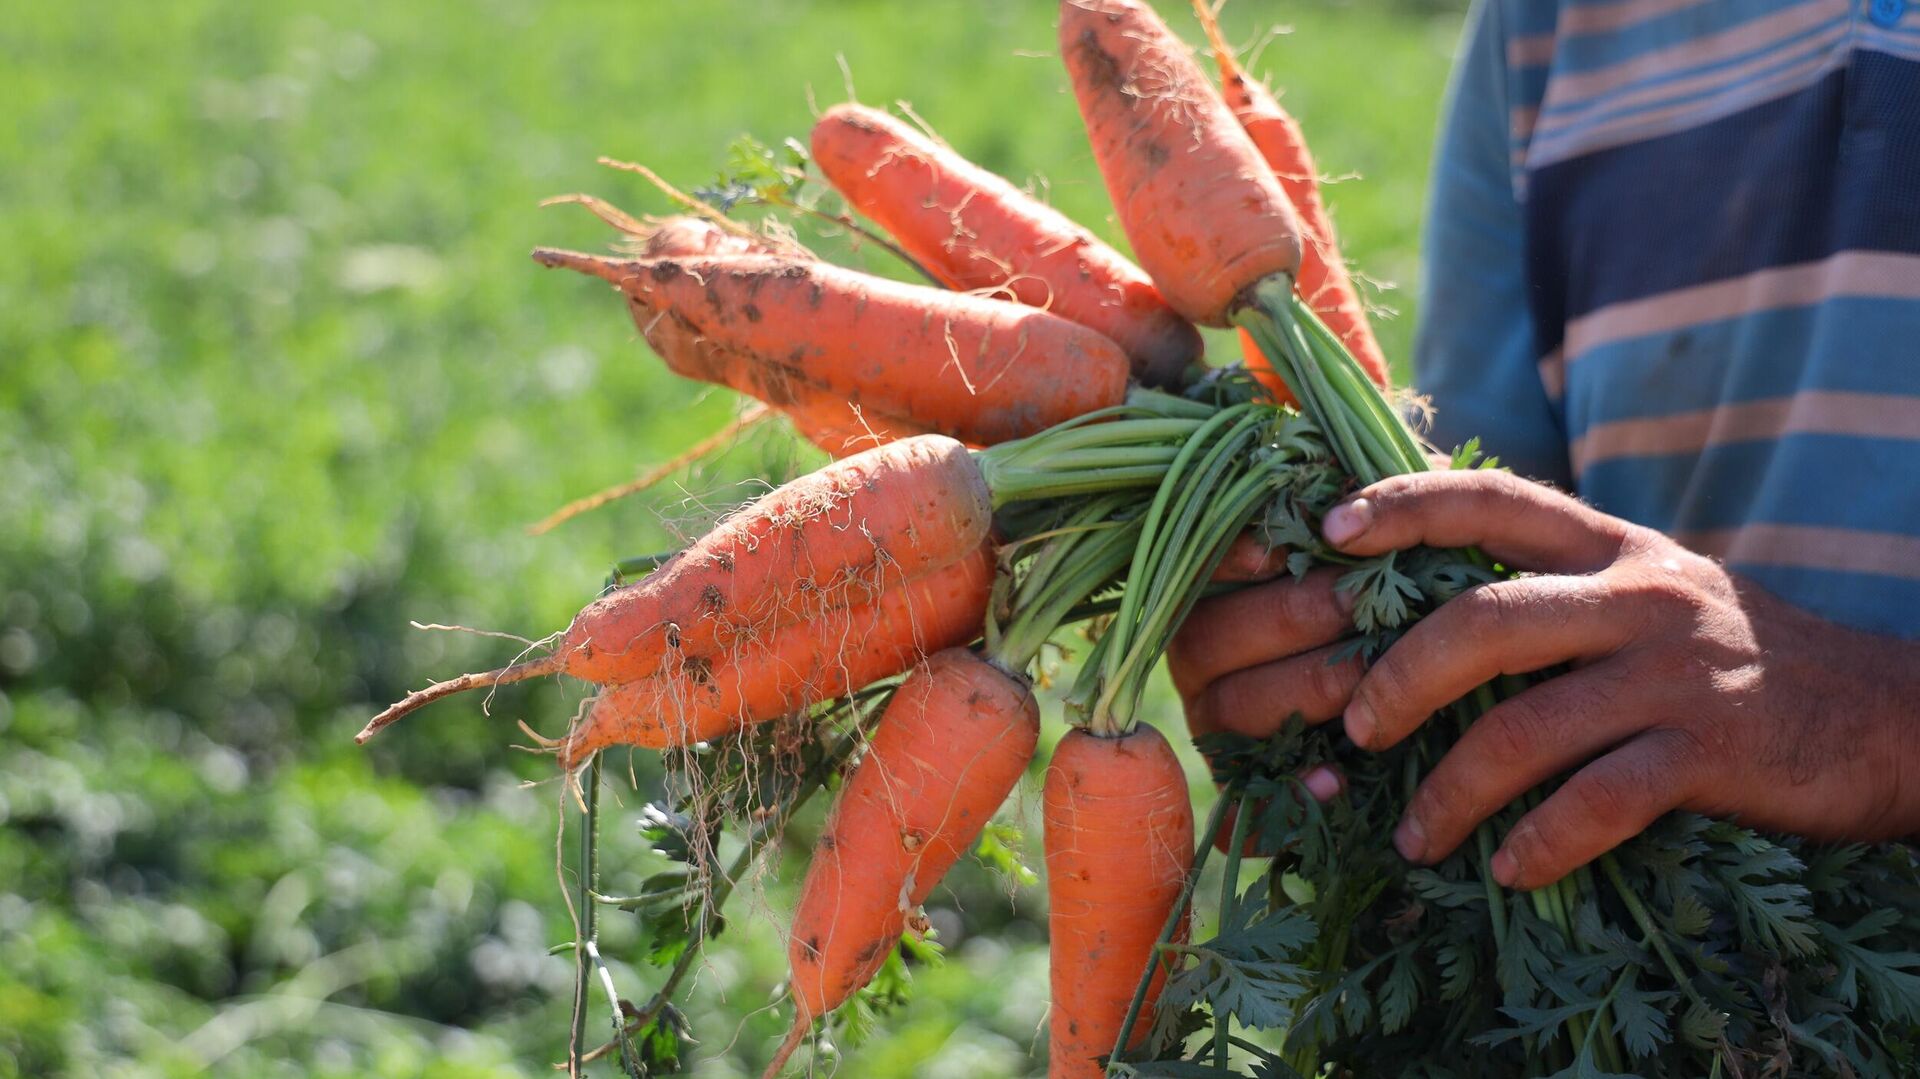 Урожай раннеспелой моркови в Узбекистане - Sputnik Узбекистан, 1920, 22.06.2021